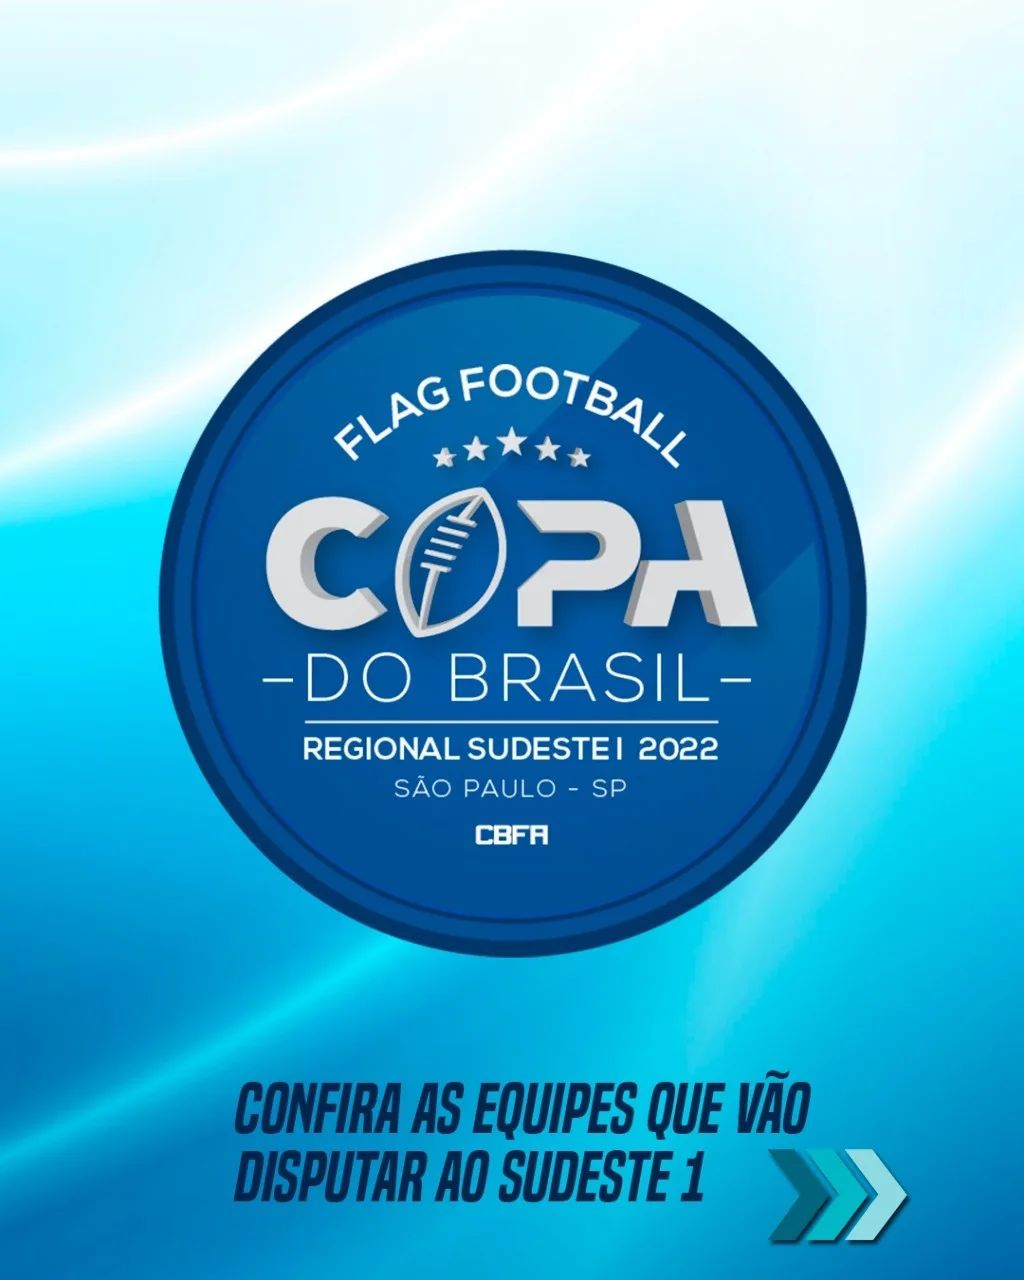 Brasil – Futebol Americano Brasil